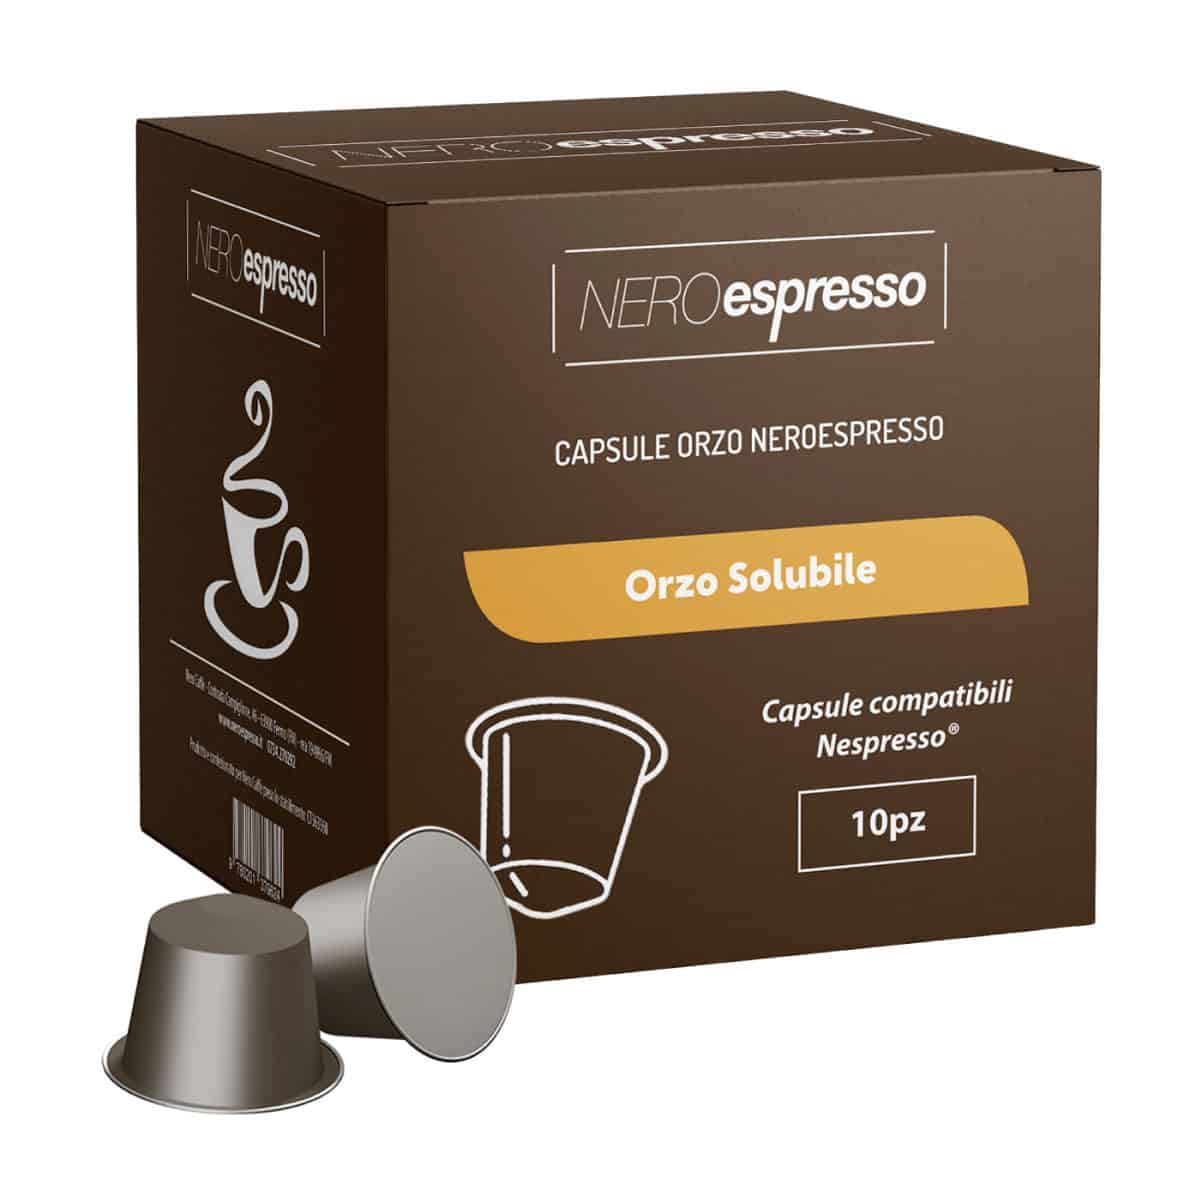 10 Capsule Orzo Solubile Compatibili Nespresso - Nero Espresso